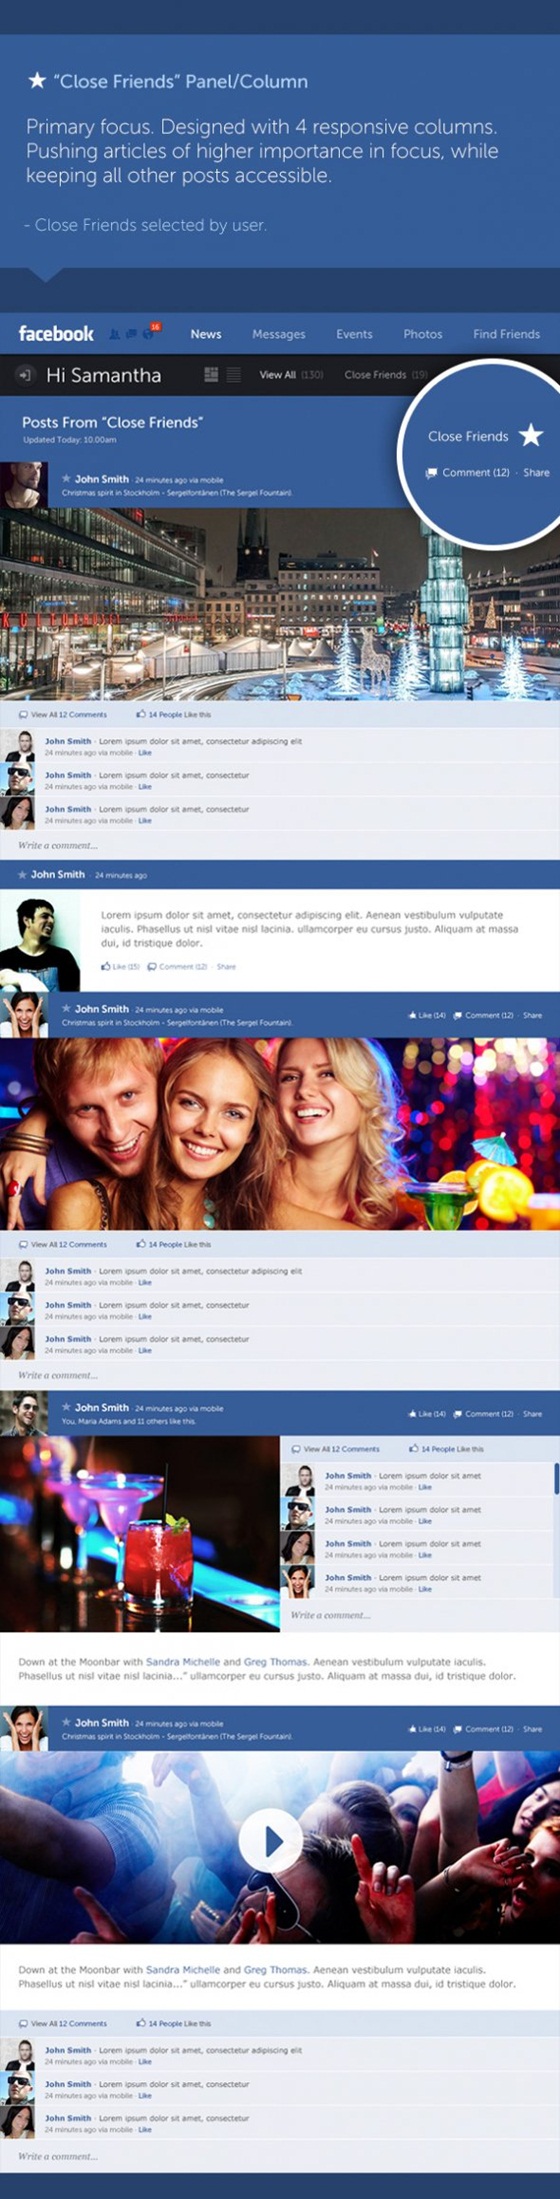 Giao diện Facebook "tái thiết kế" đẹp mắt 5